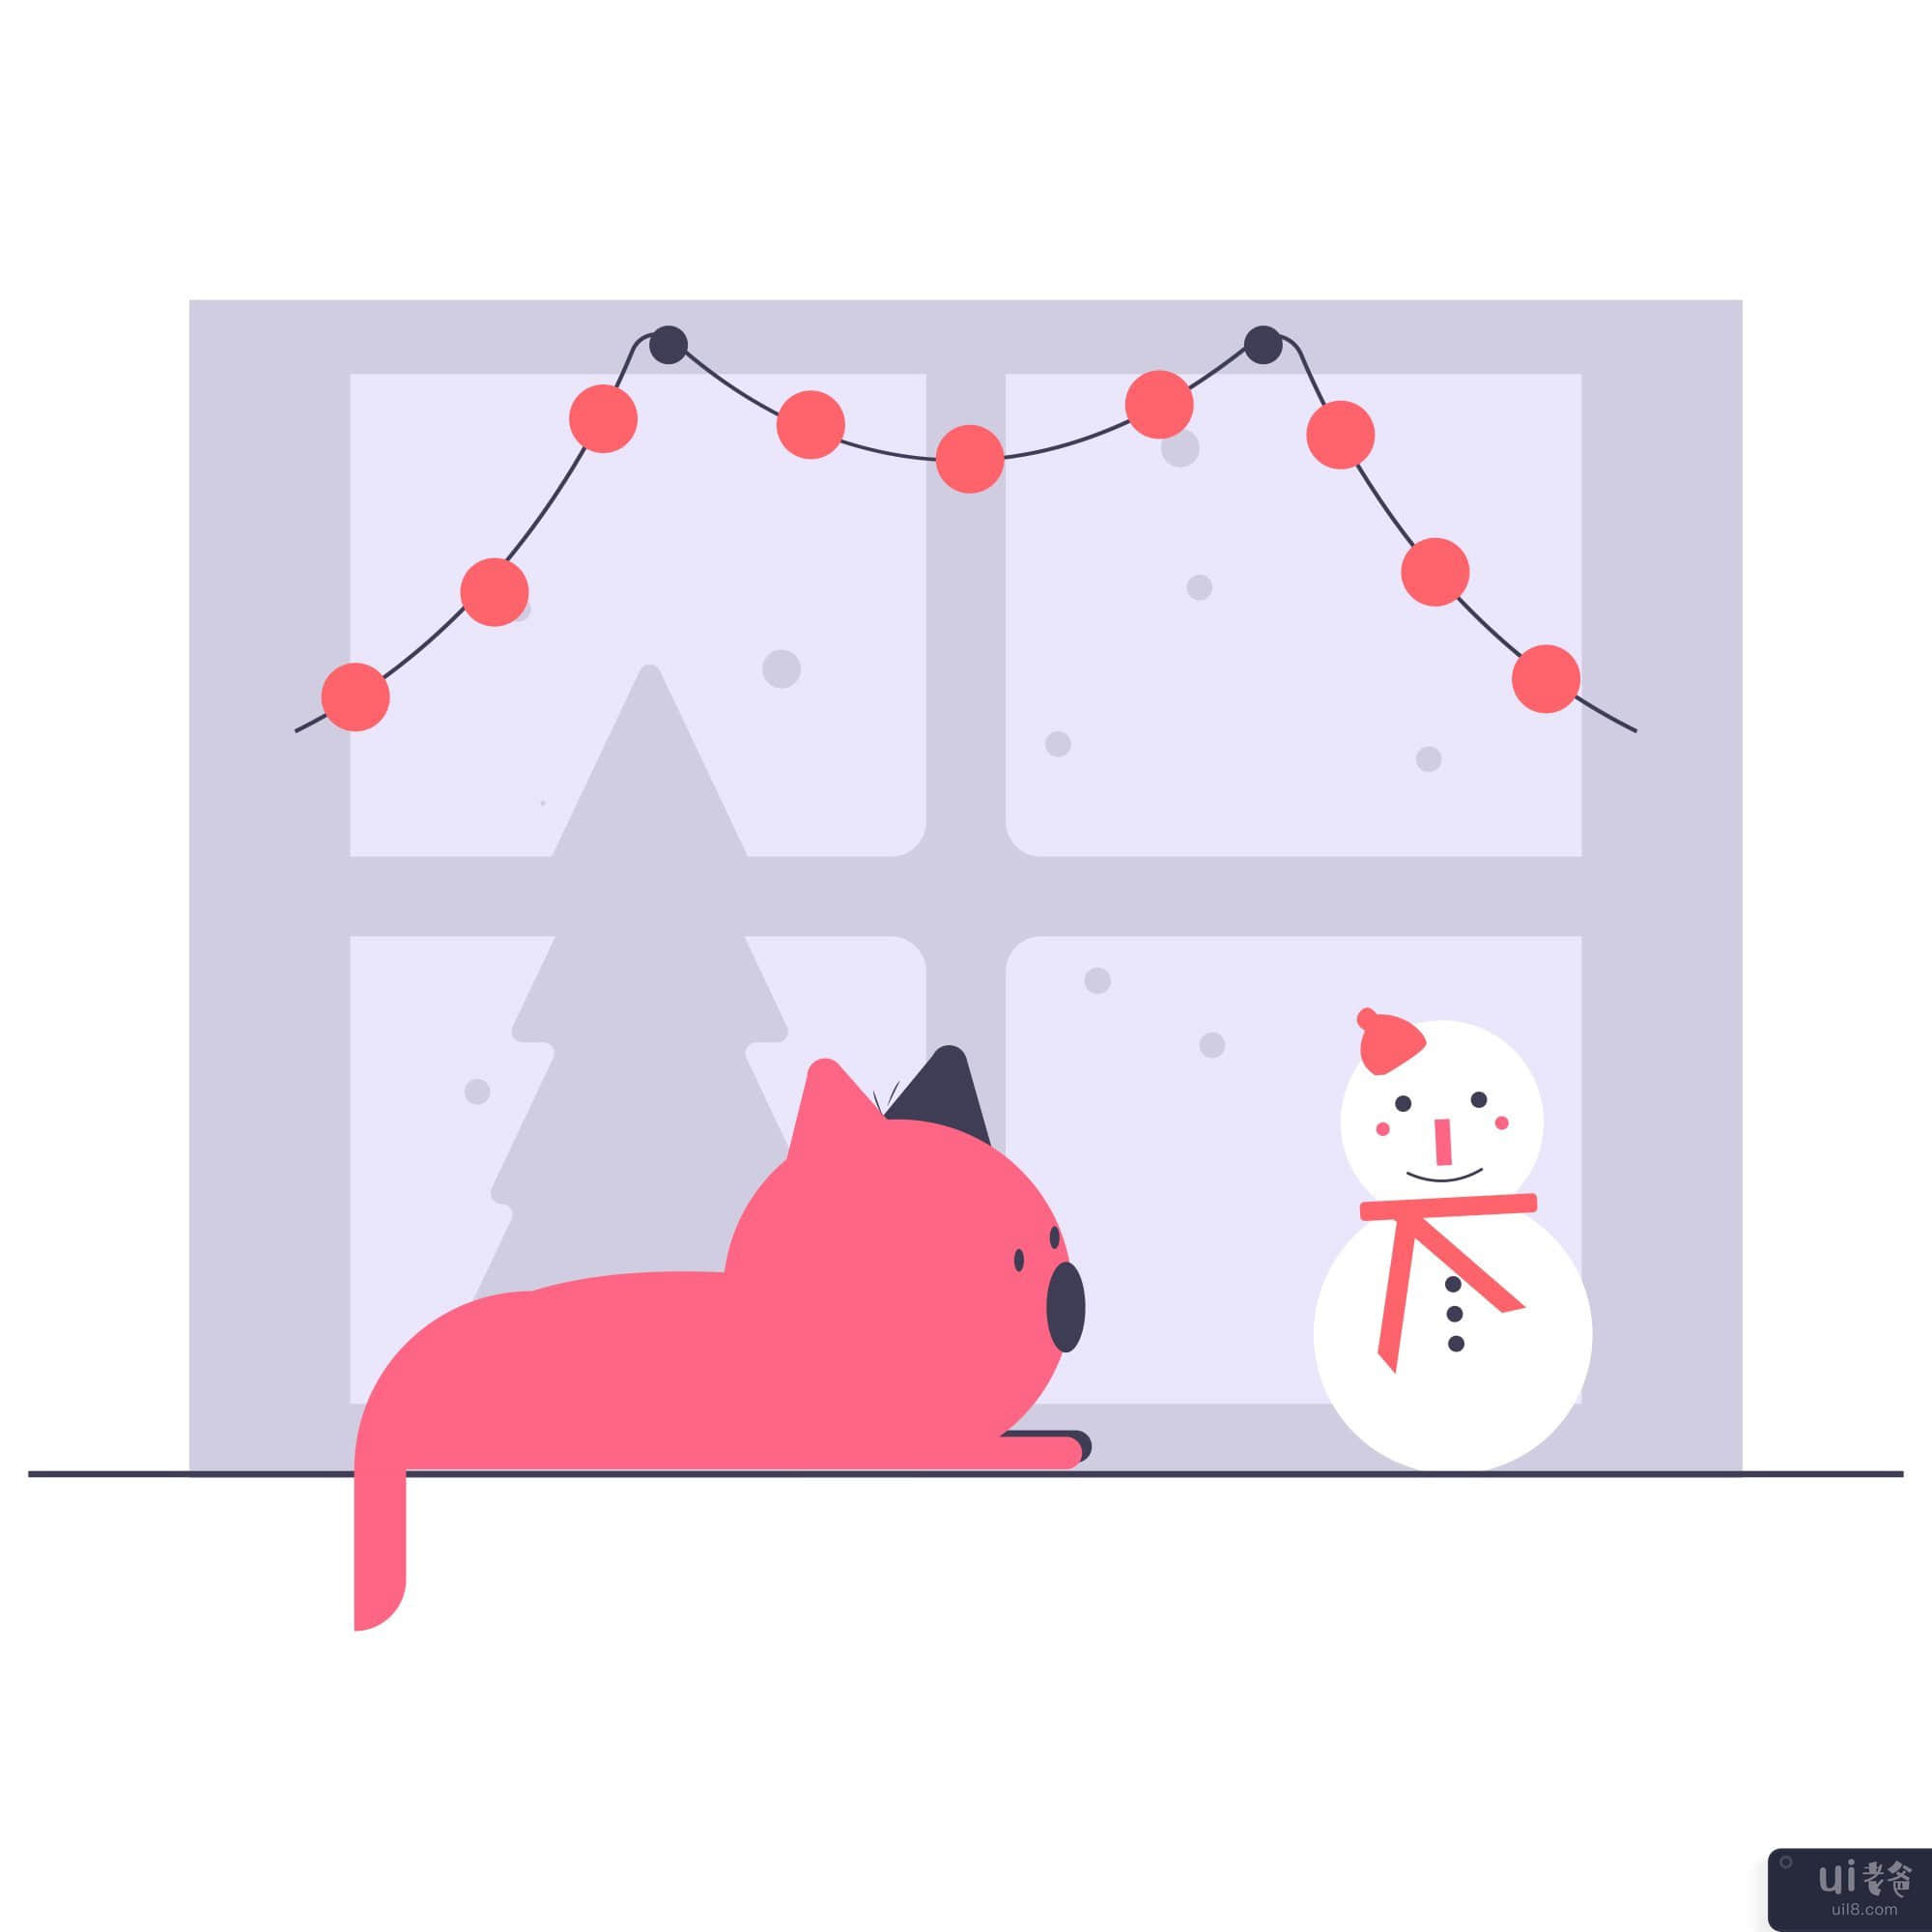 有雪插图的圣诞朋友(Christmas friends with snow illustration)插图2